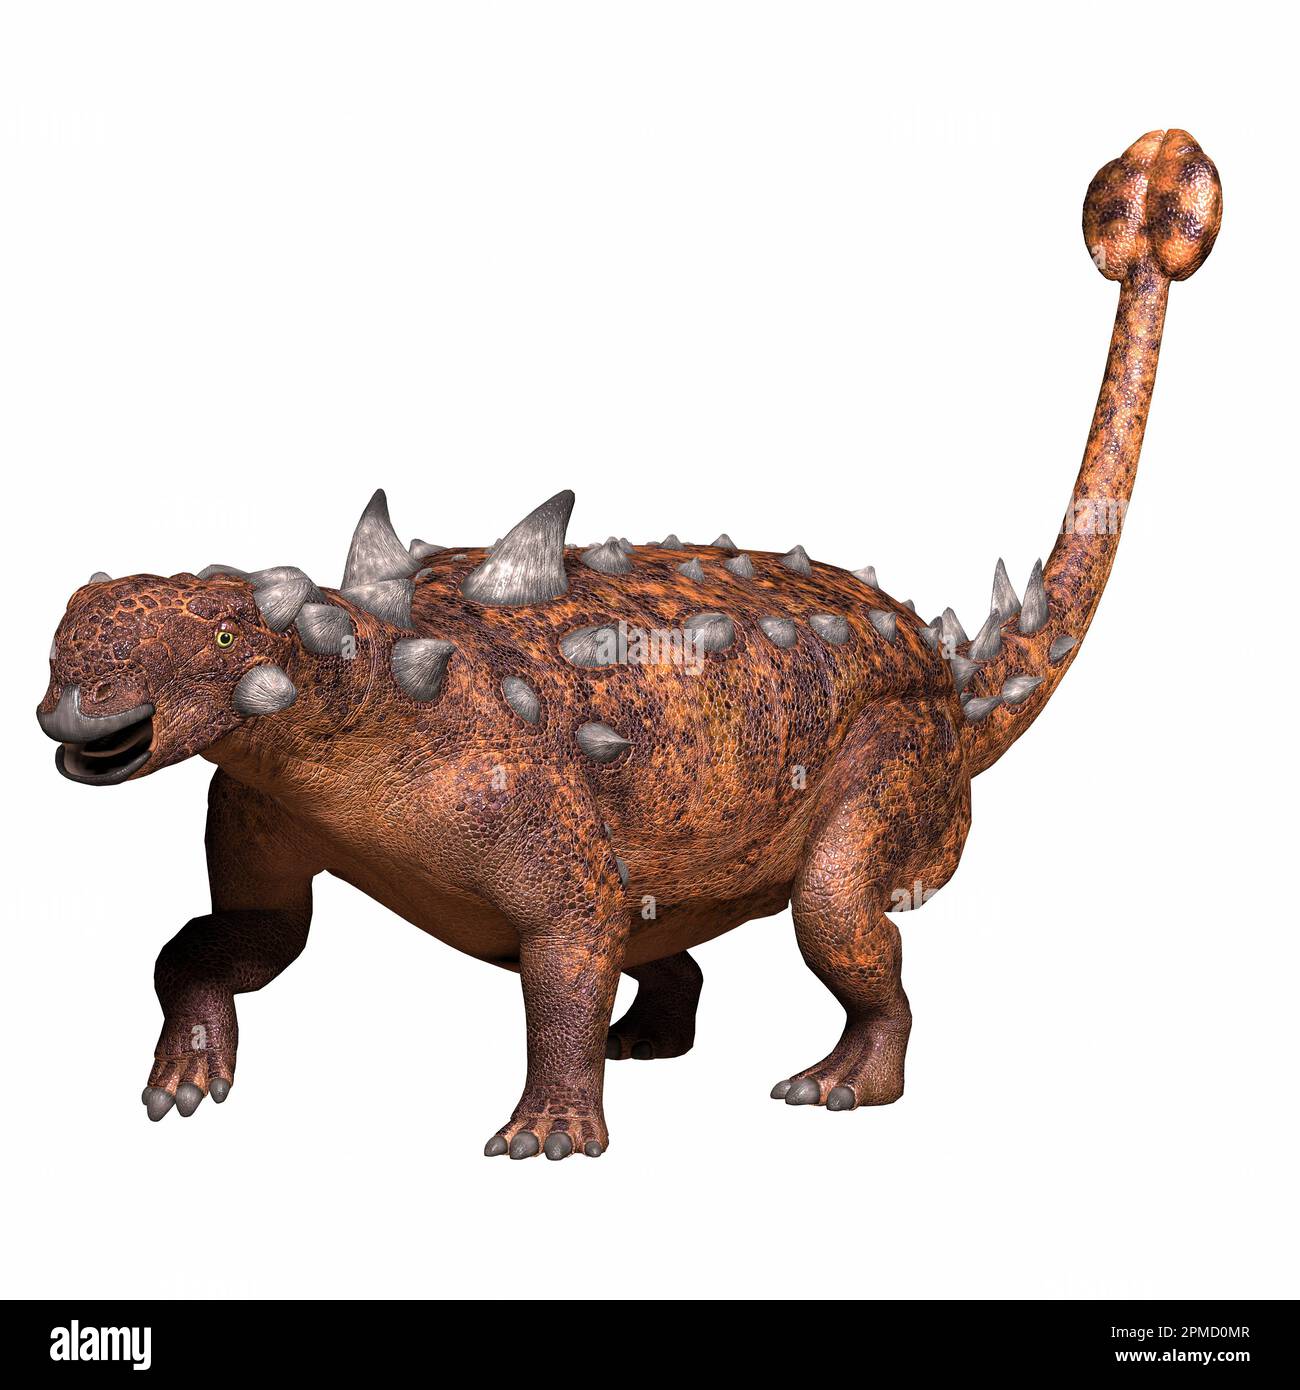 Euoplocephalus era un dinosauro armorato di anchilosauro che viveva in Alberta, Canada durante il periodo cretaceo. Foto Stock